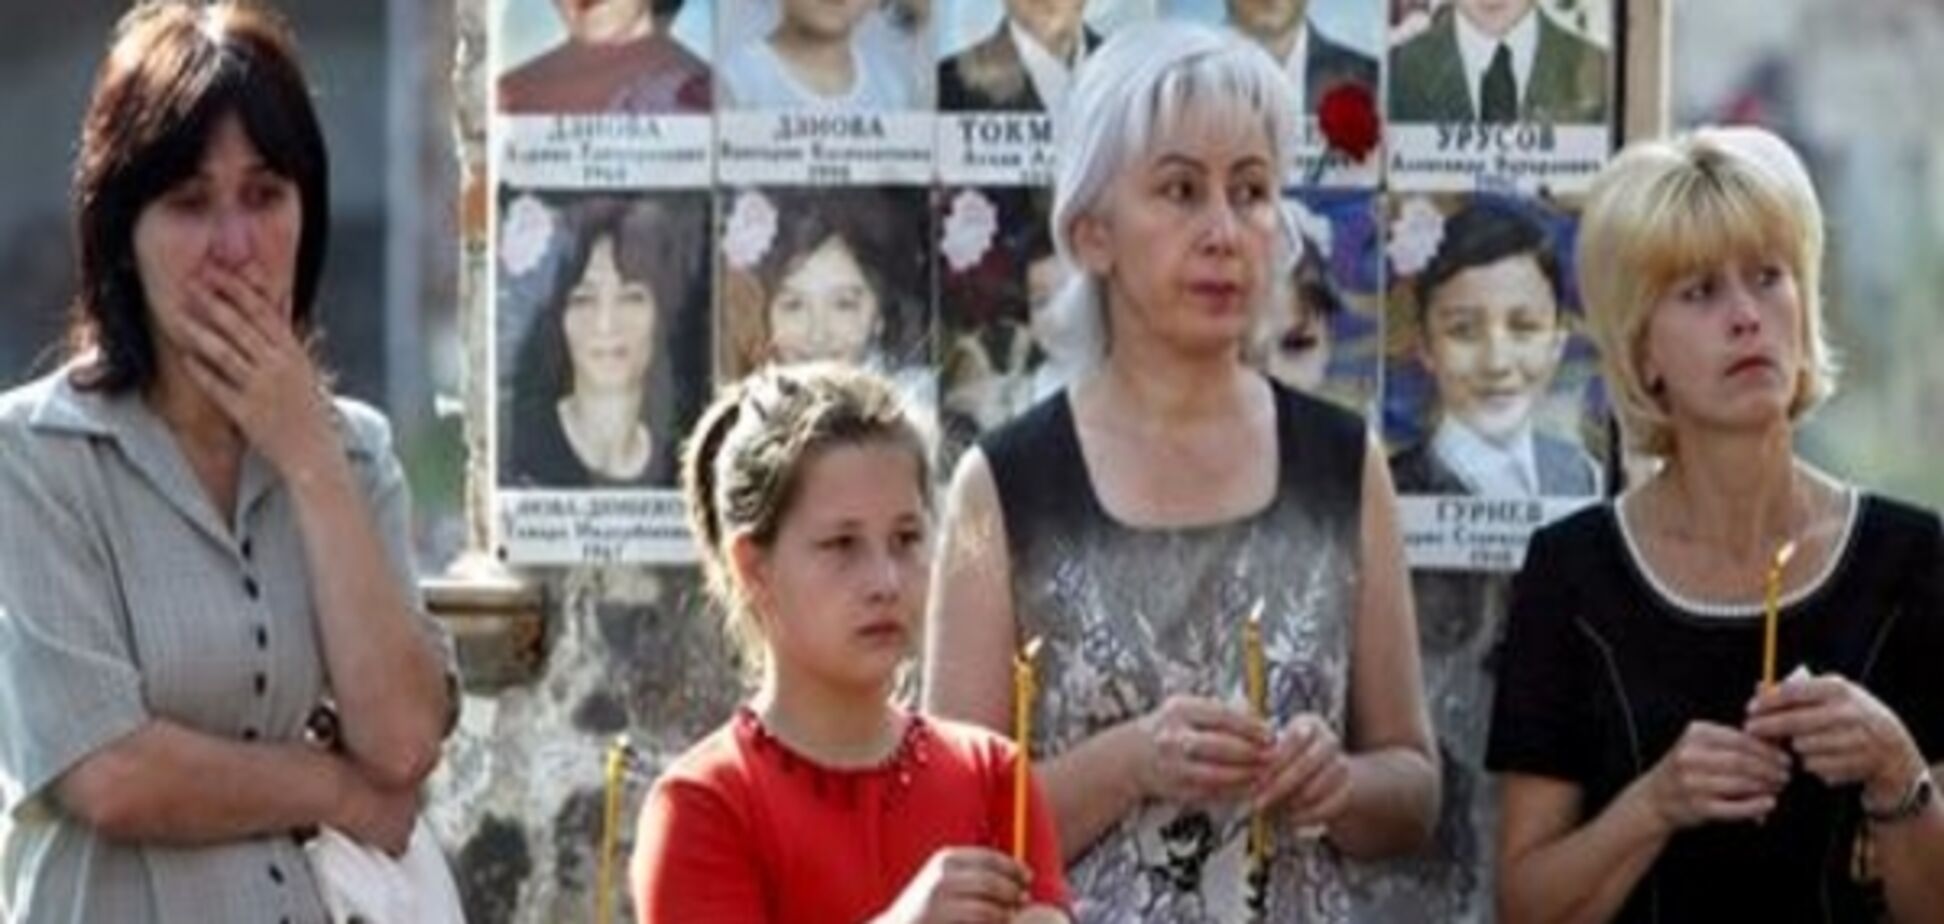 ЄСПЛ наказав Росії виплатити три мільйони євро родичам жертв у Беслані